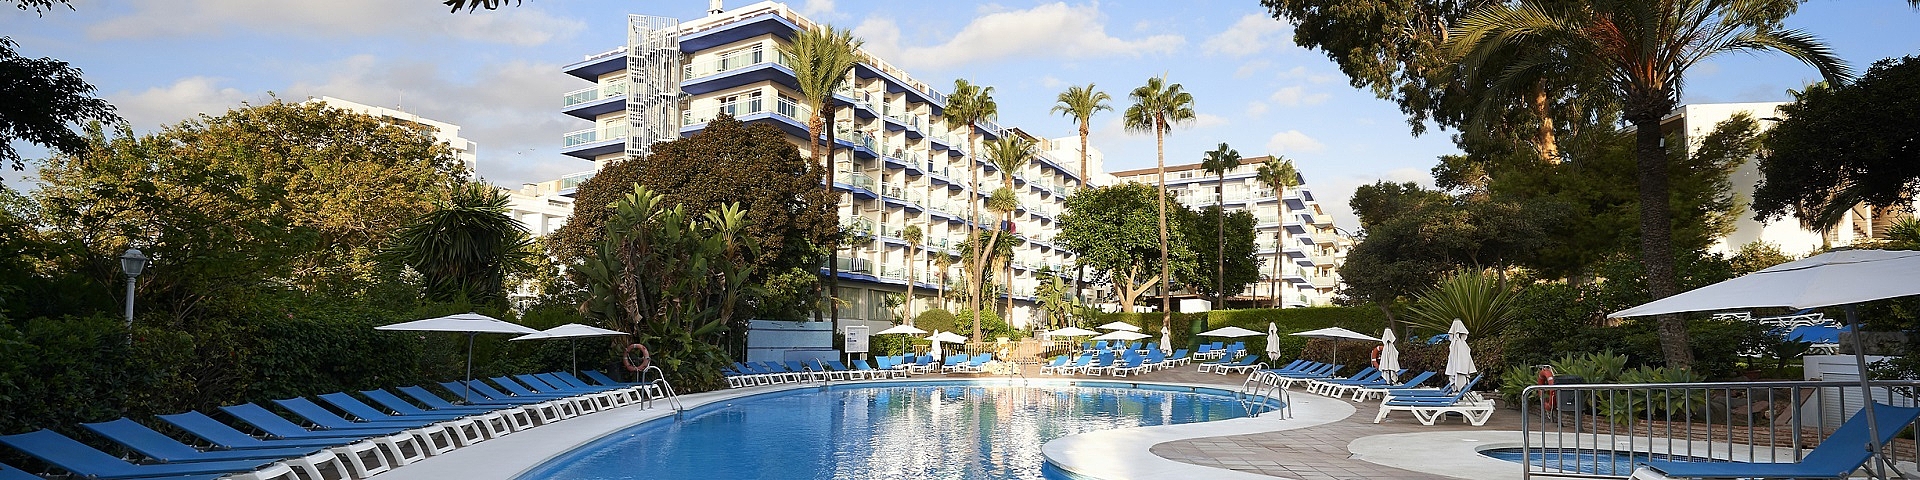 Hotel Palmasol | Golf i Benalmádena